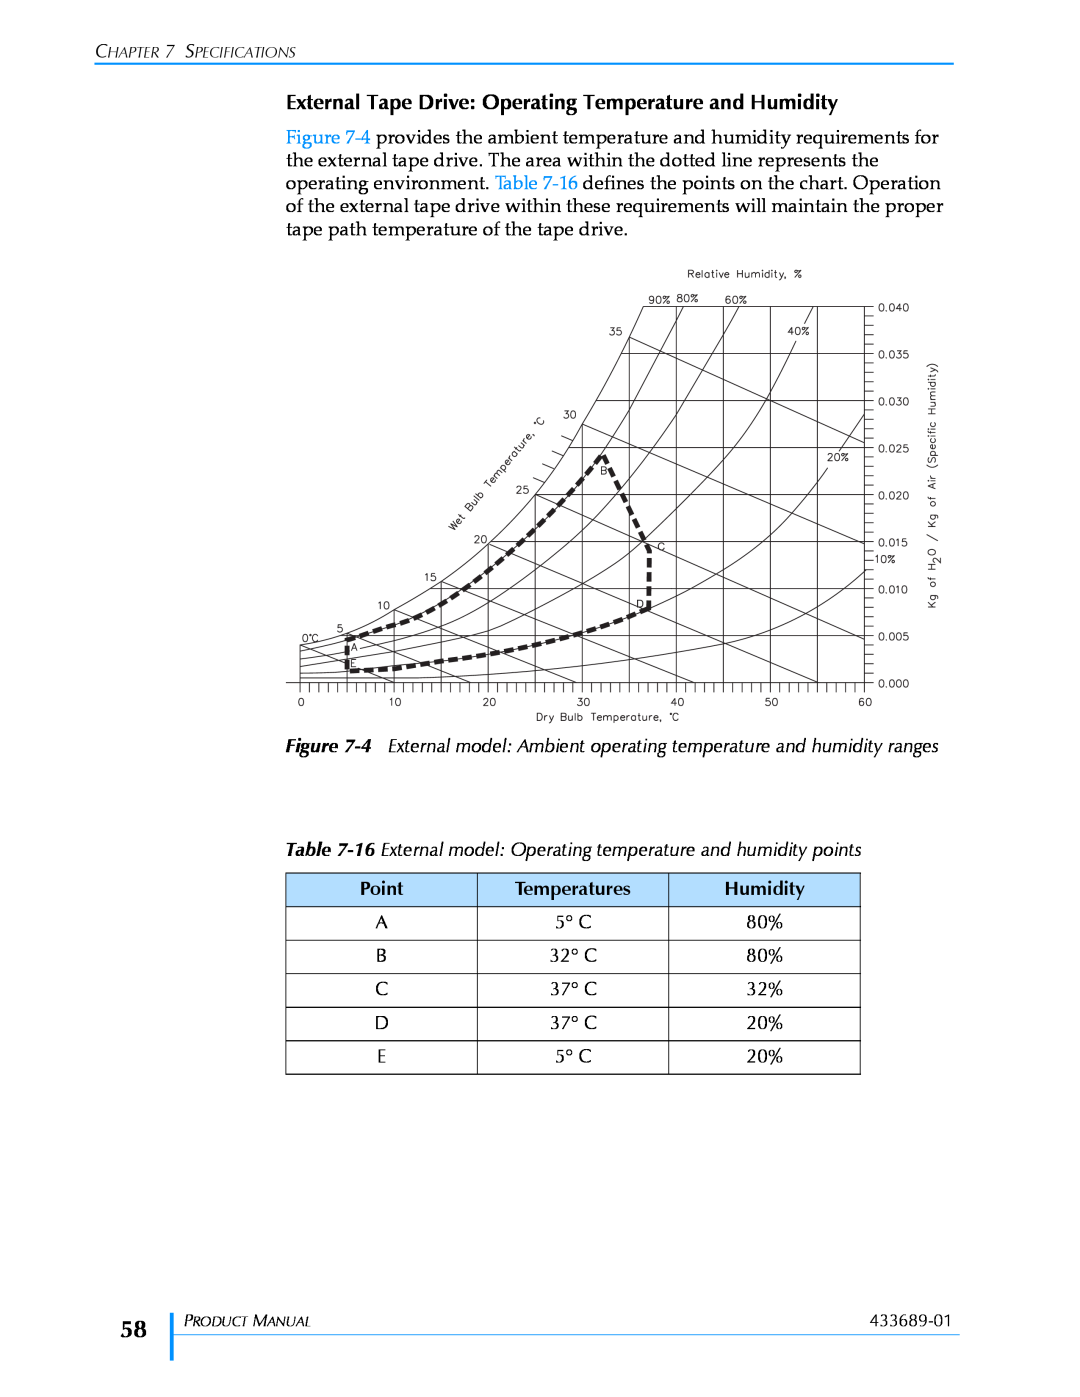 Tandberg Data VXA-320 (VXA-3) manual Point, Temperatures, Humidity, 32 C, 37 C 